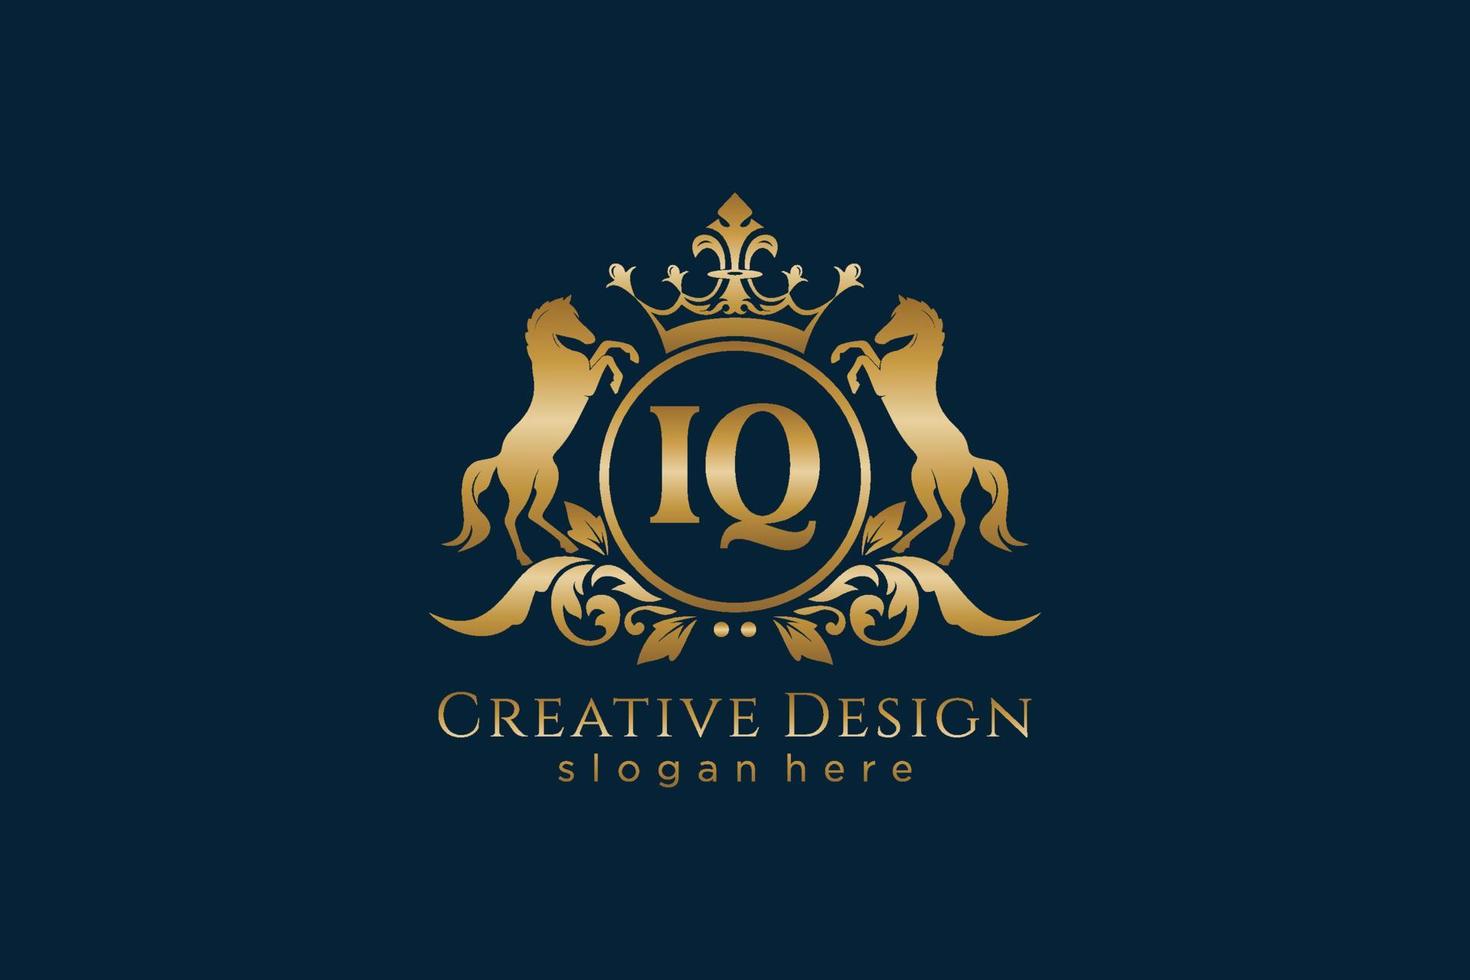 cresta dorada retro iq inicial con círculo y dos caballos, plantilla de insignia con pergaminos y corona real - perfecto para proyectos de marca de lujo vector